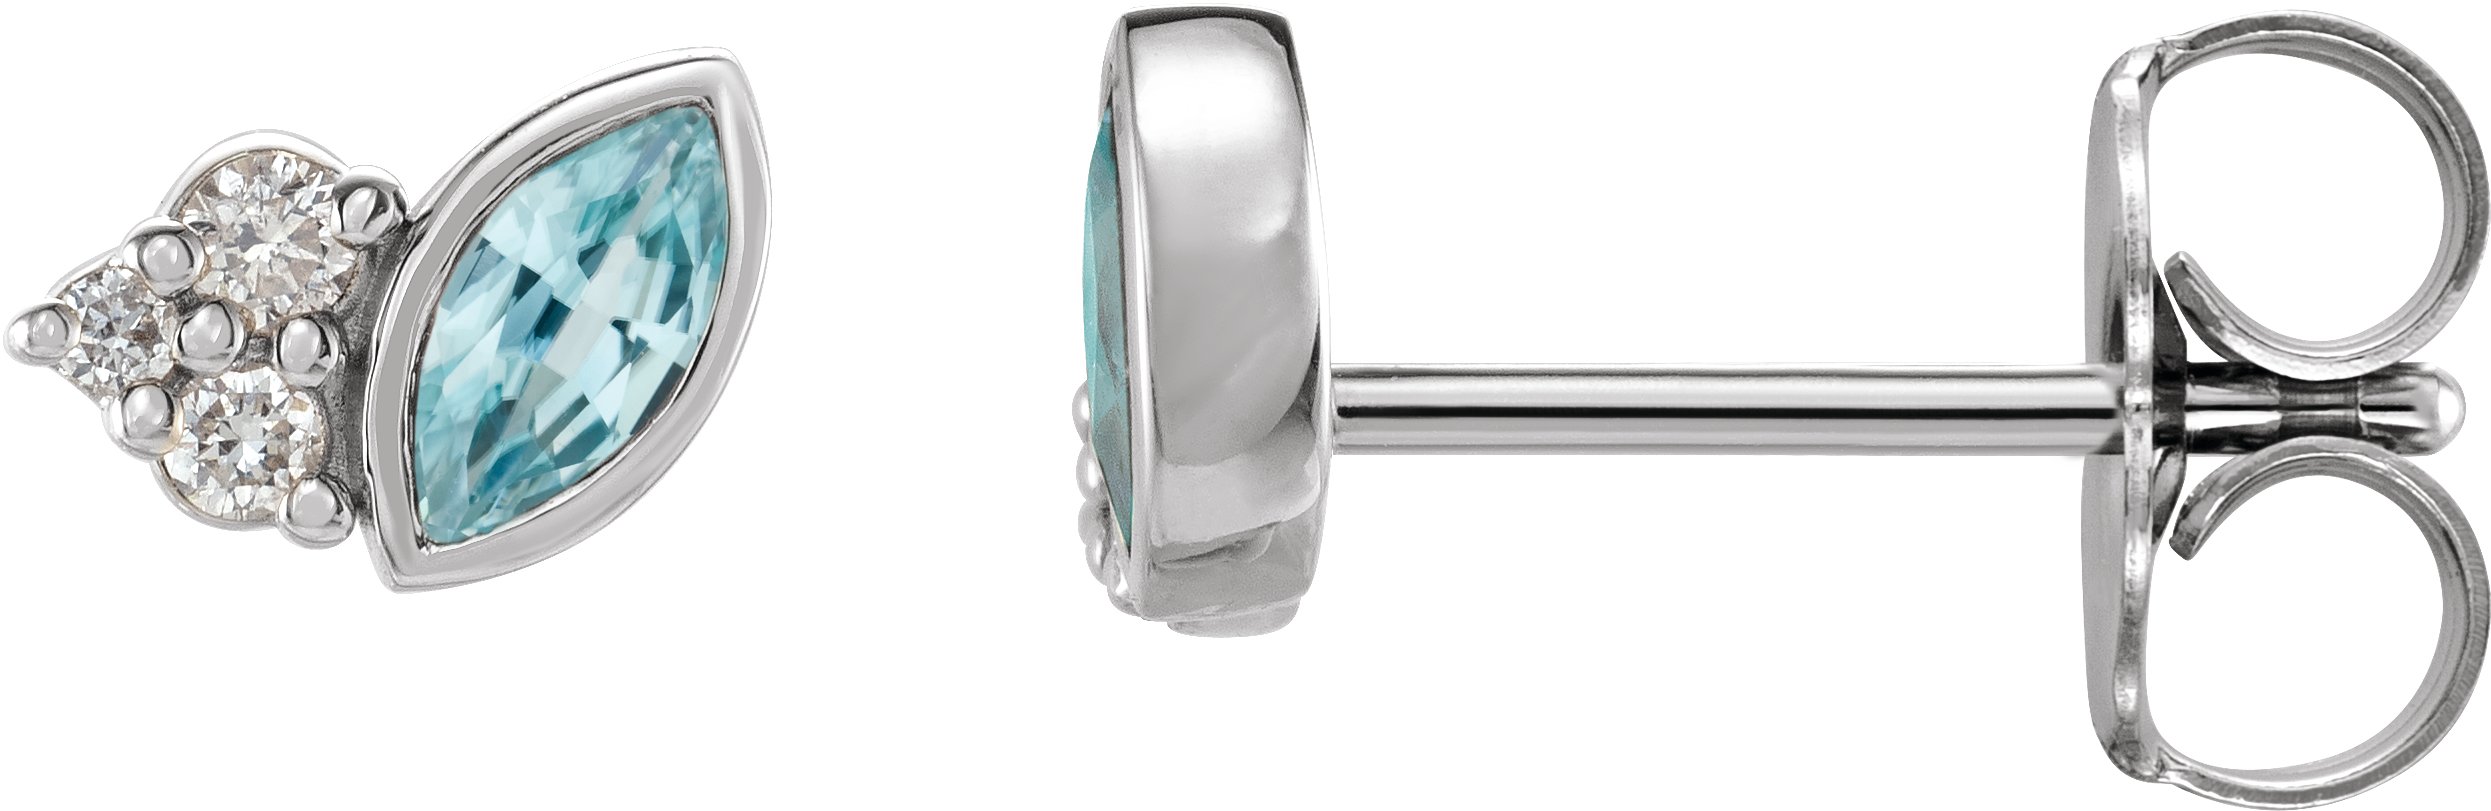 Sterling Silver Blue Zircon and .05 CTW Diamond Earrings Ref. 16501441